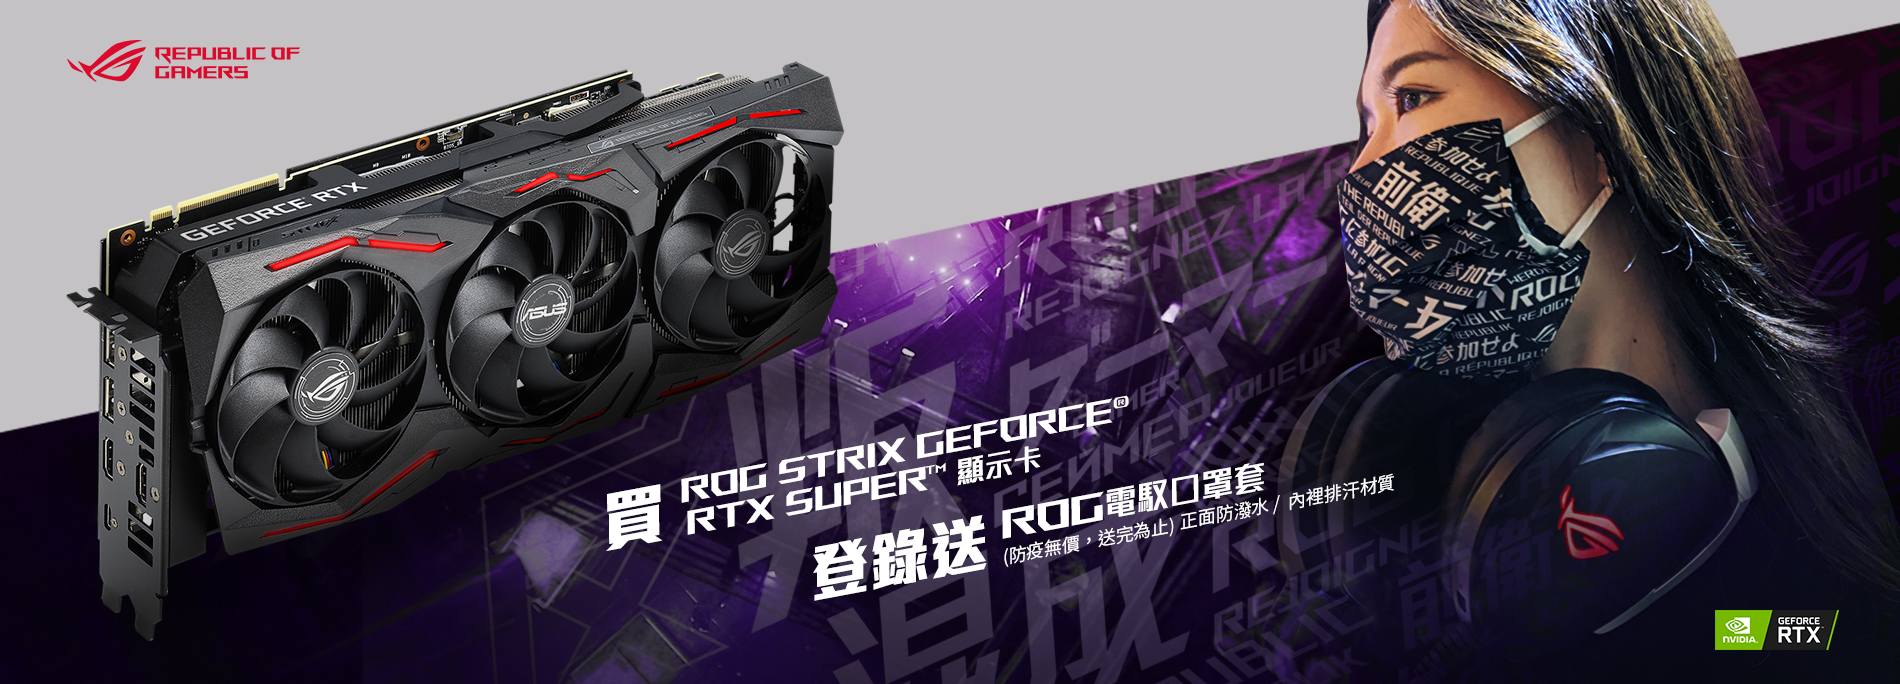 活動期間購買 ROG Strix GeForce® RTX 2080 / 2070 / 2060 Super  顯示卡，官網登錄送『ROG 電馭口罩套 』(防疫無價，數量有限送完為止)